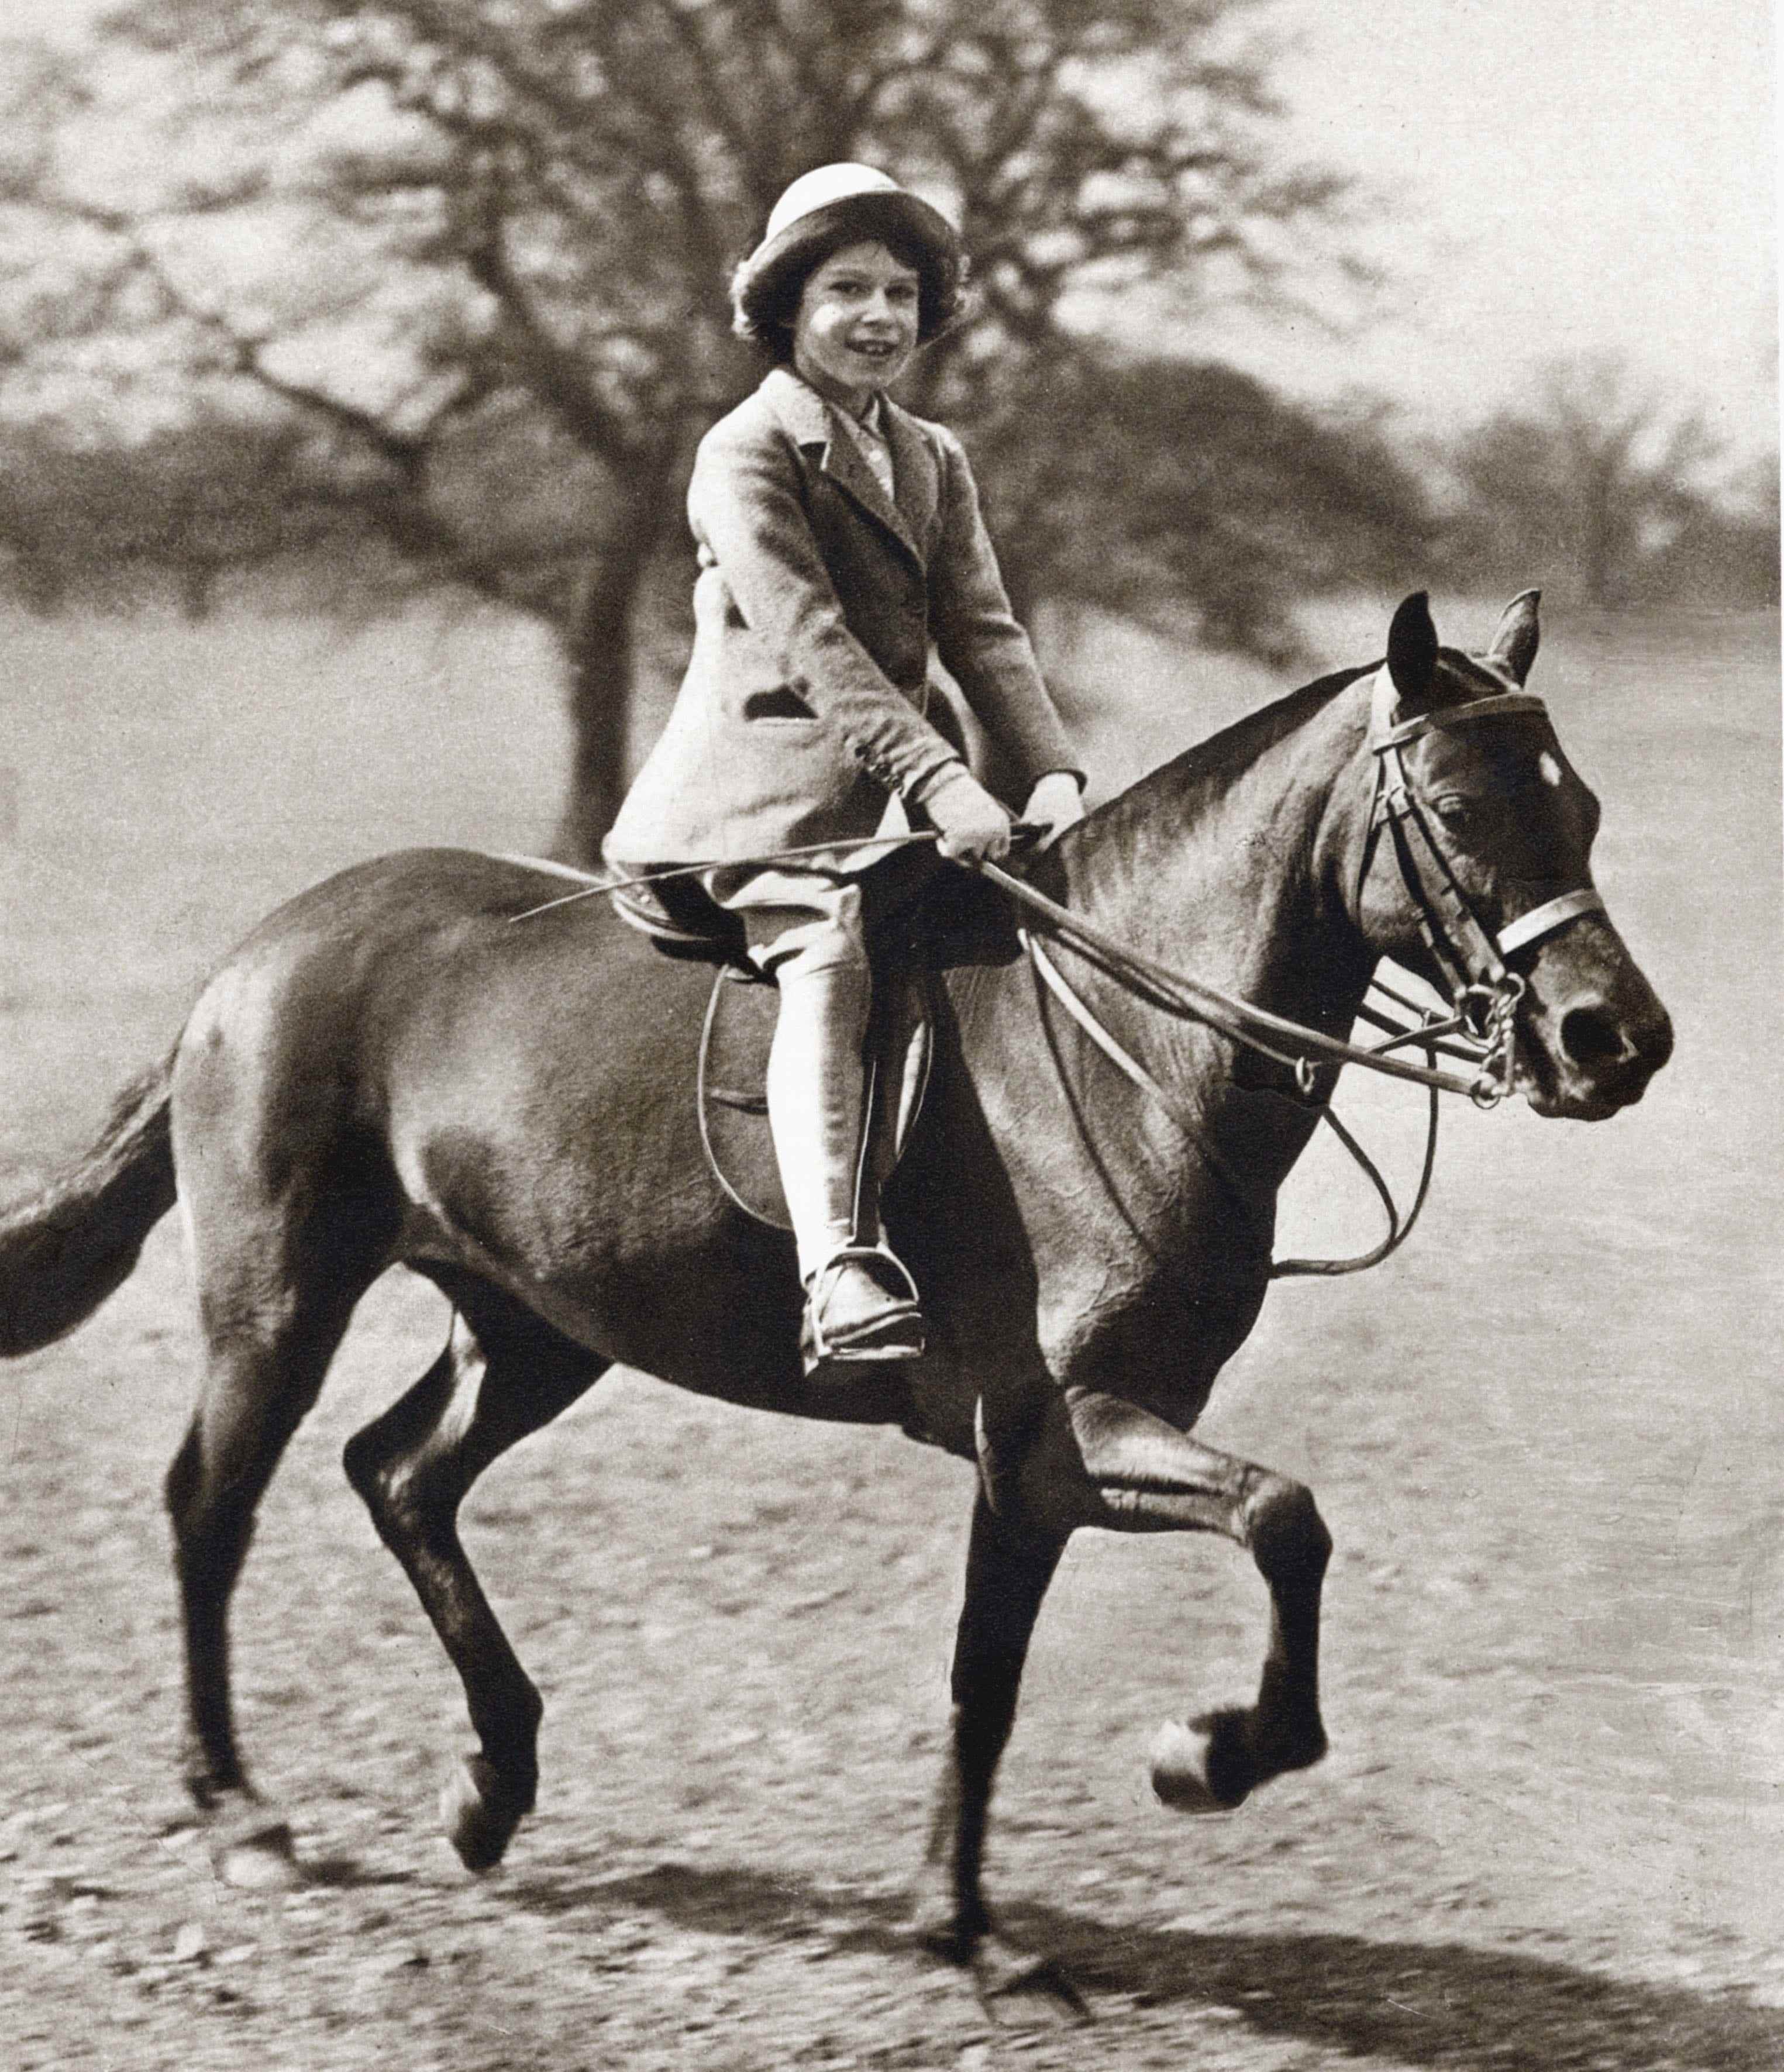 Prinzessin Elizabeth, zukünftige Königin Elizabeth II. als Kind im Alter von 9 Jahren. 1935.